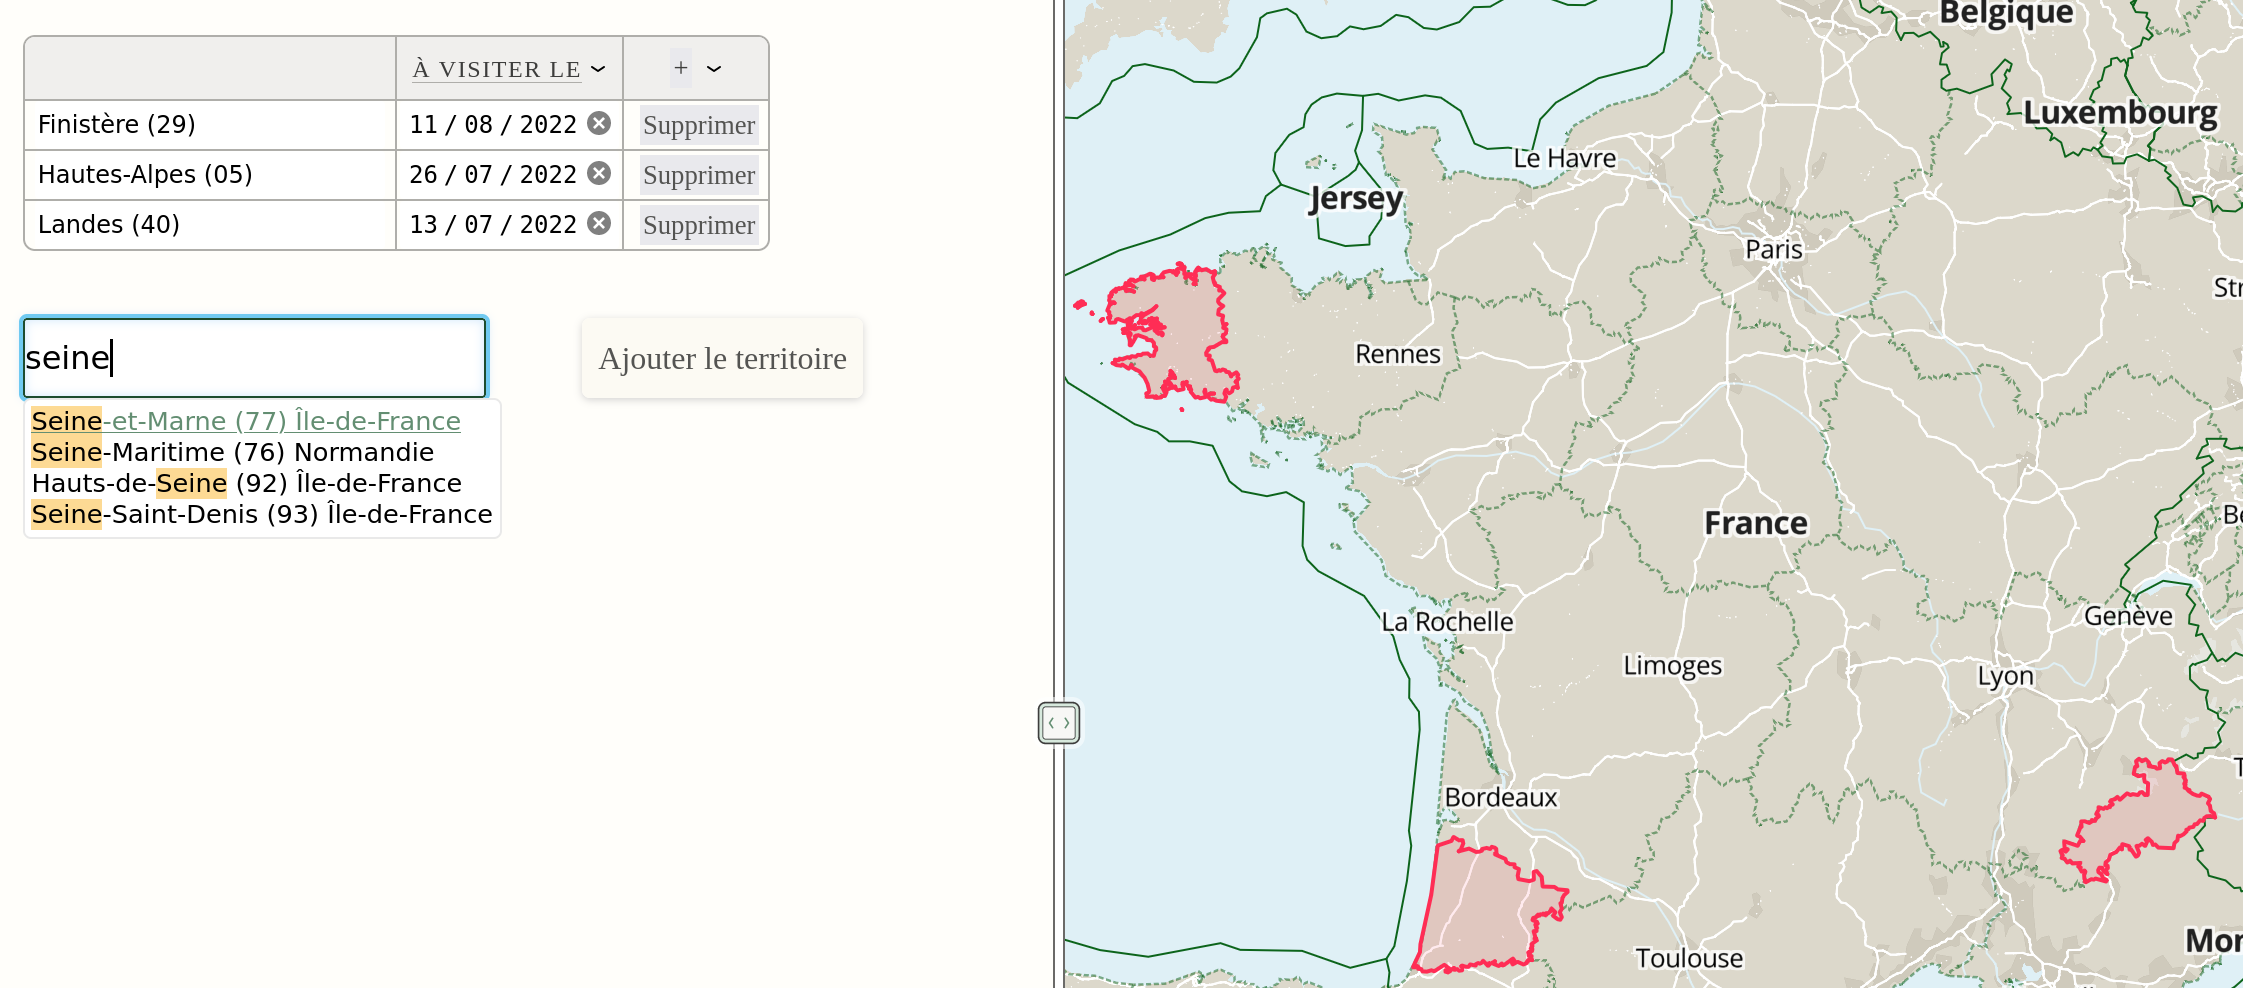 Exemple de Ĝis avec des données basées sur des territoires (départements)